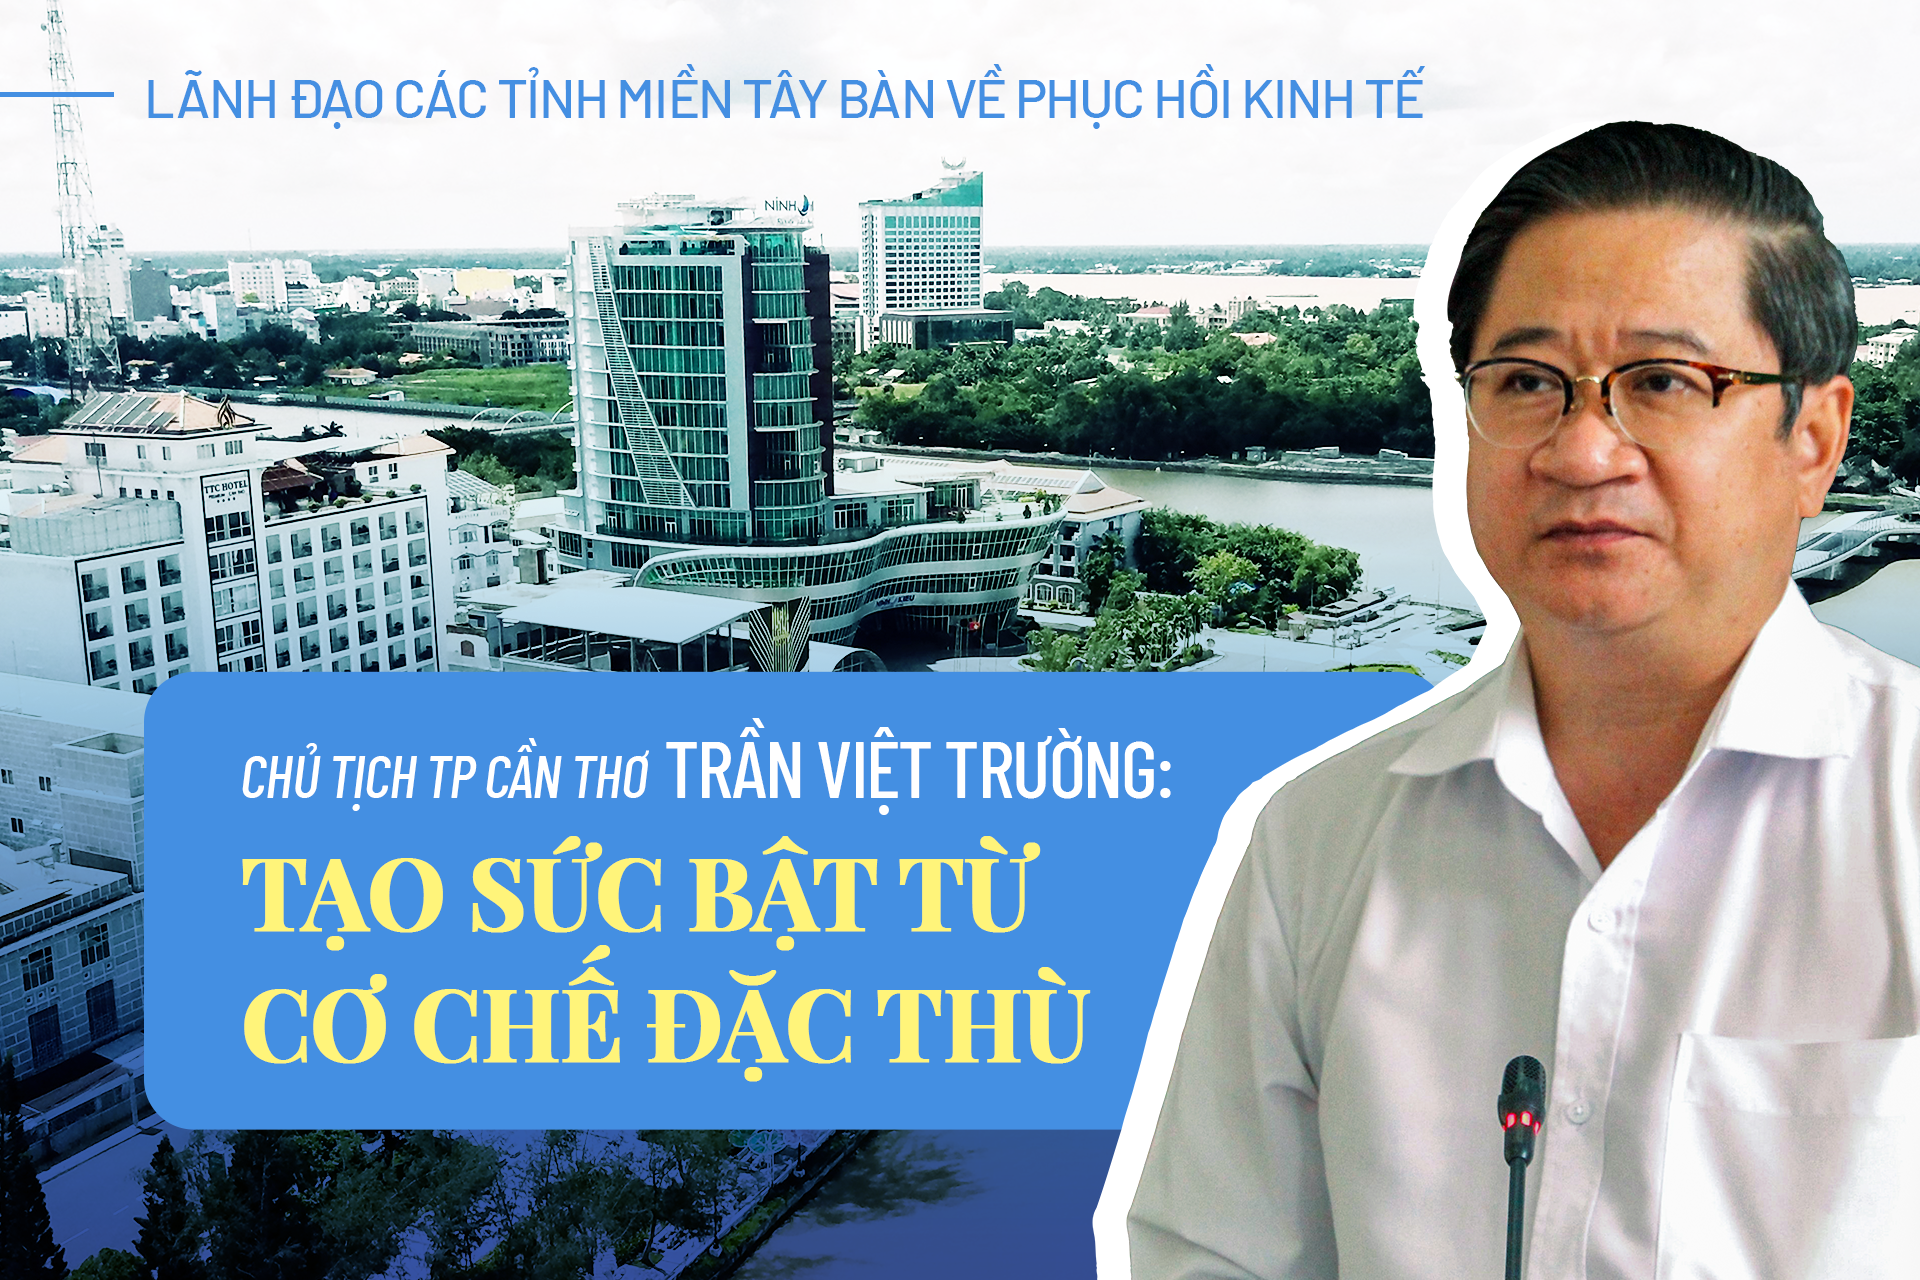 Chủ tịch TP Cần Thơ Trần Việt Trường: Tạo sức bật từ cơ chế đặc thù